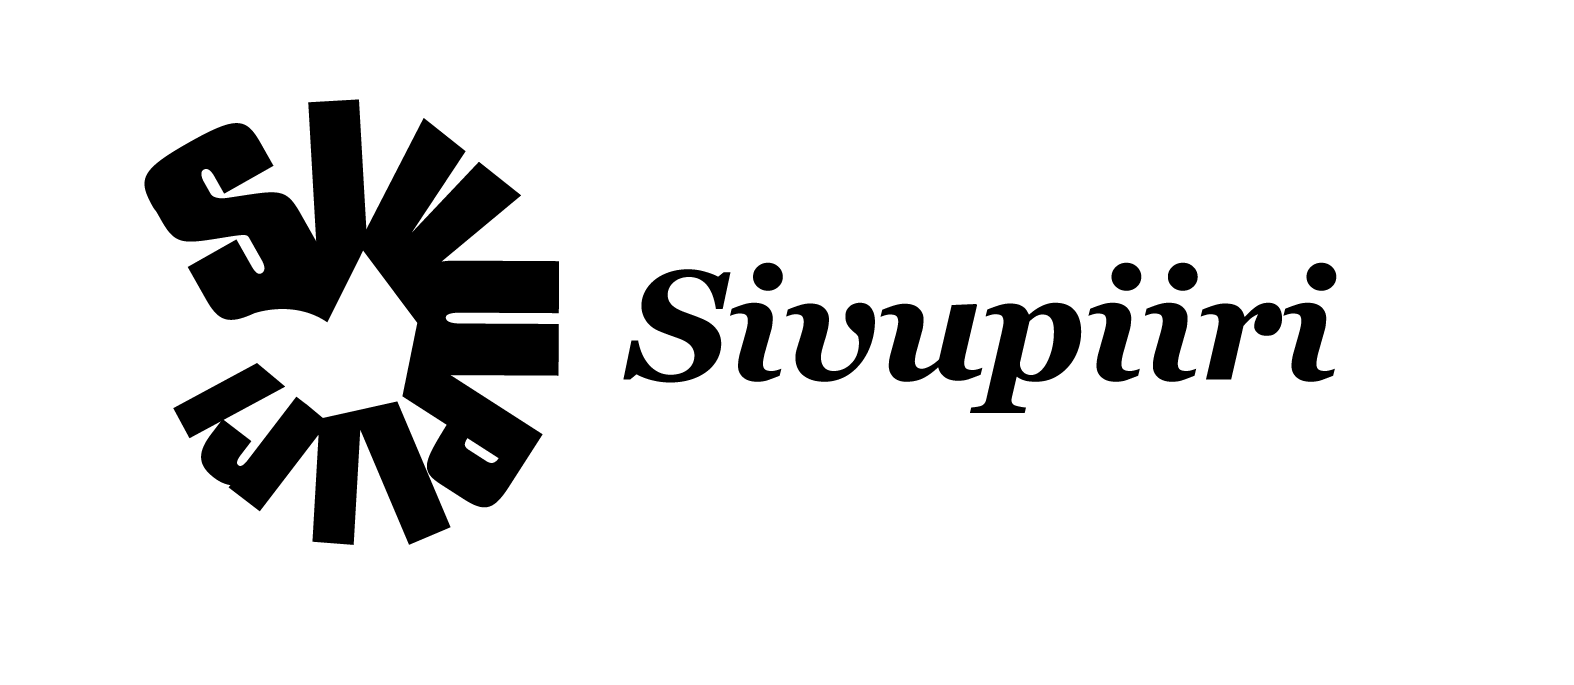 Siirryt Sivupiiri.fi-verkkosivulle, ulkopuolinen palvelu, avaa uuden välilehden.